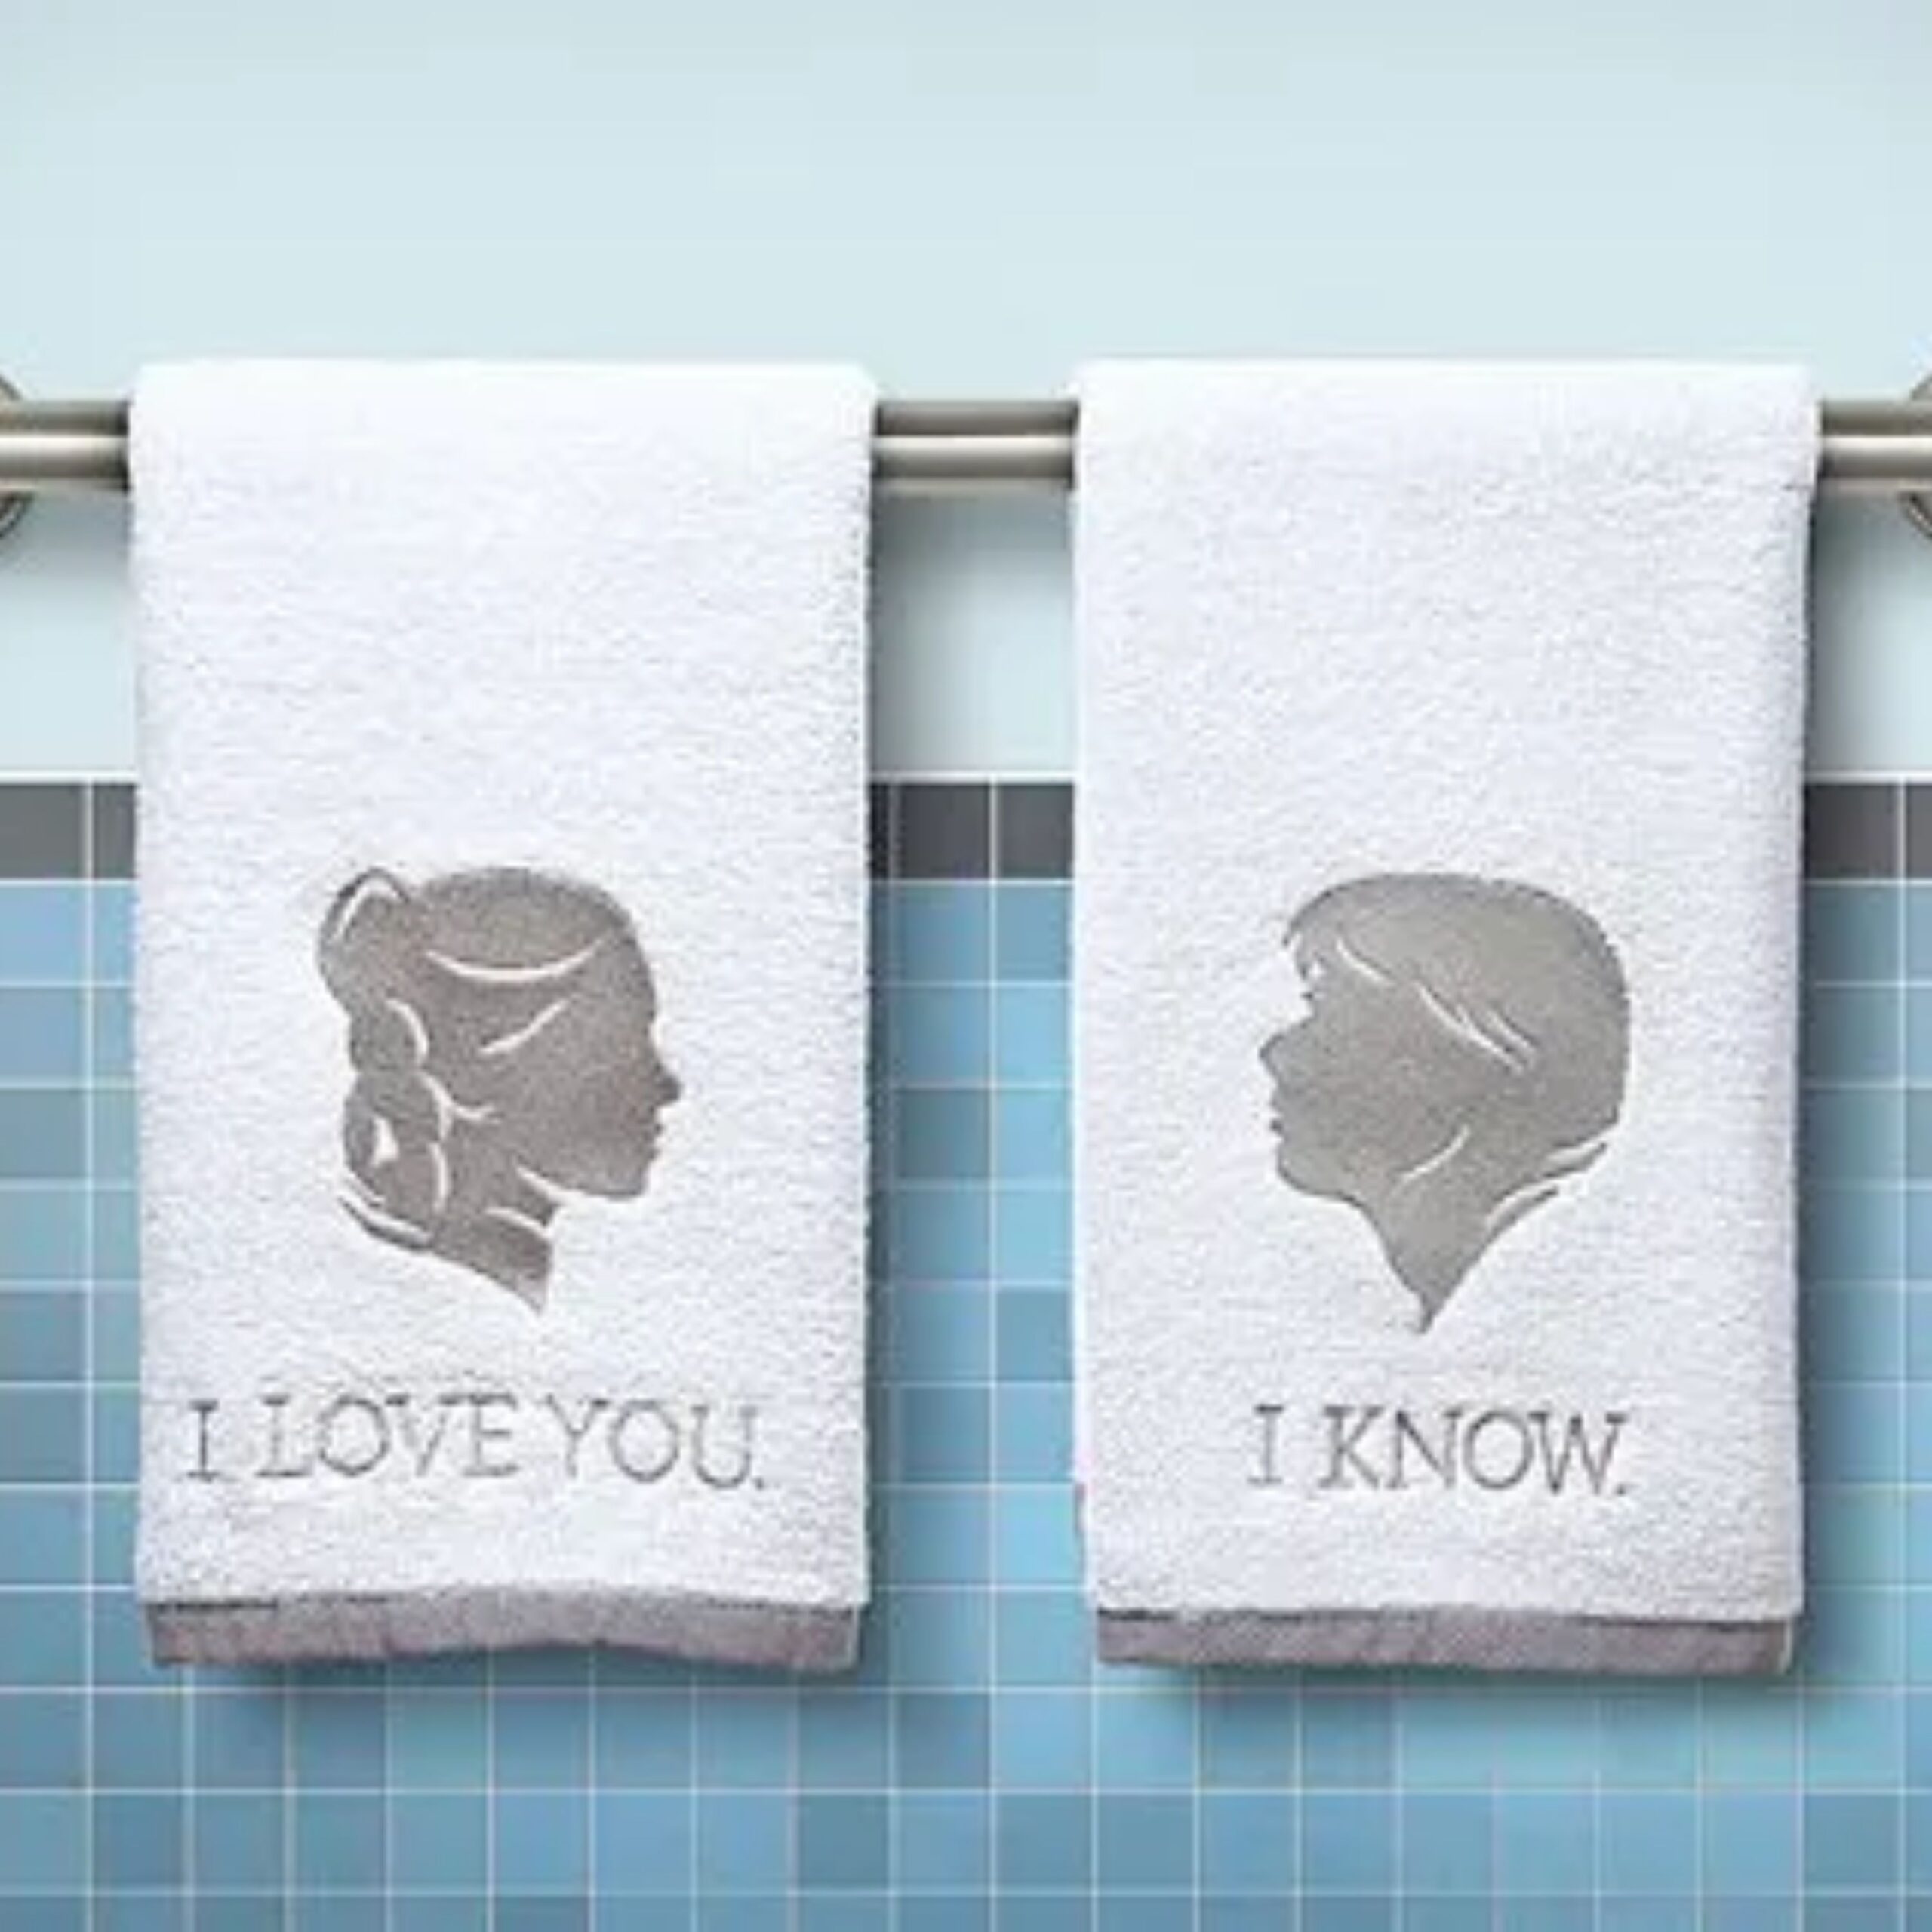 Star wars towels